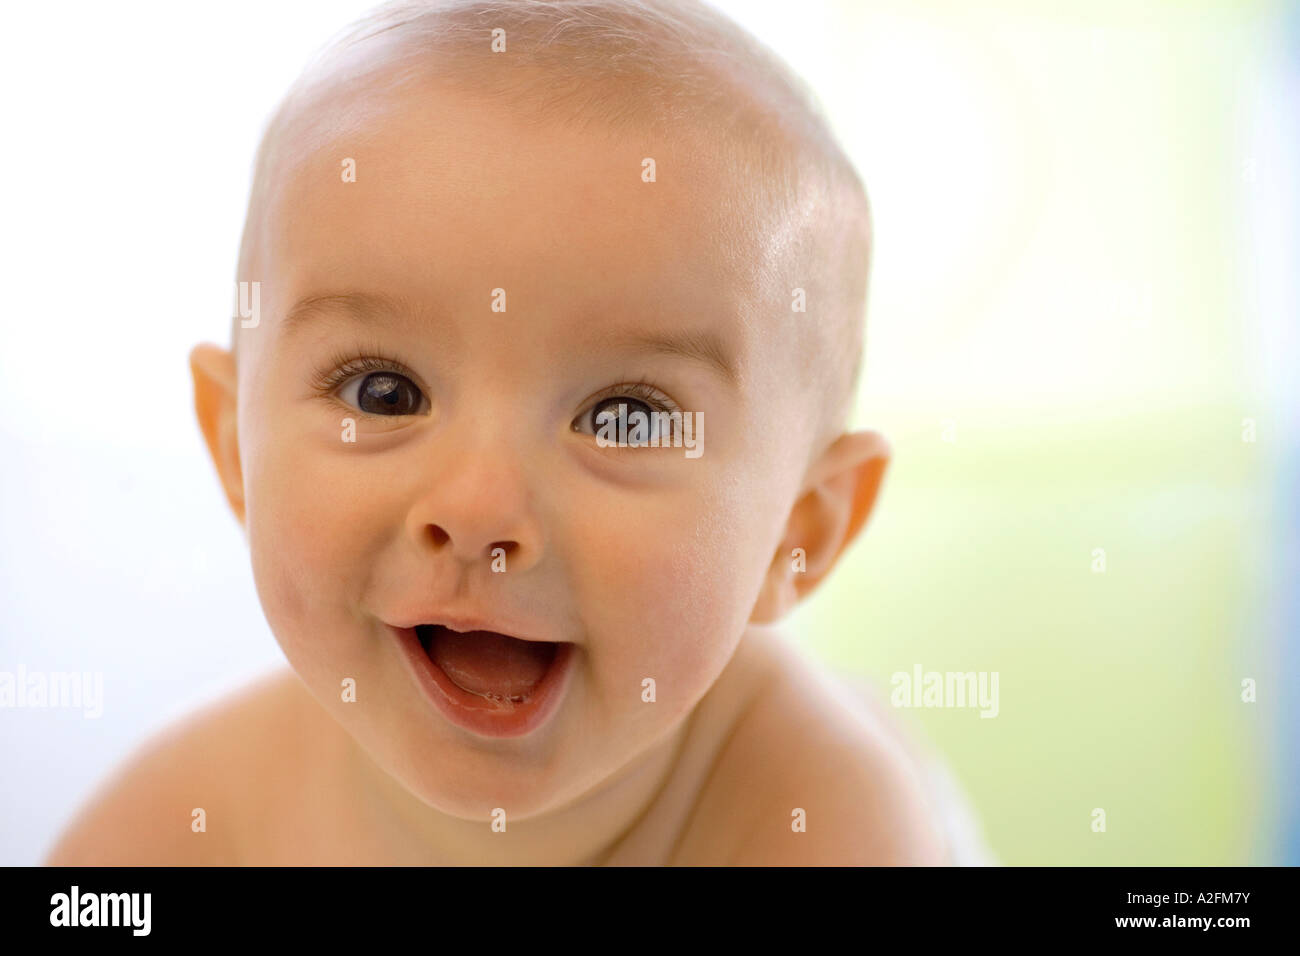 Bébé garçon (6-12 mois), smiling, close-up Banque D'Images